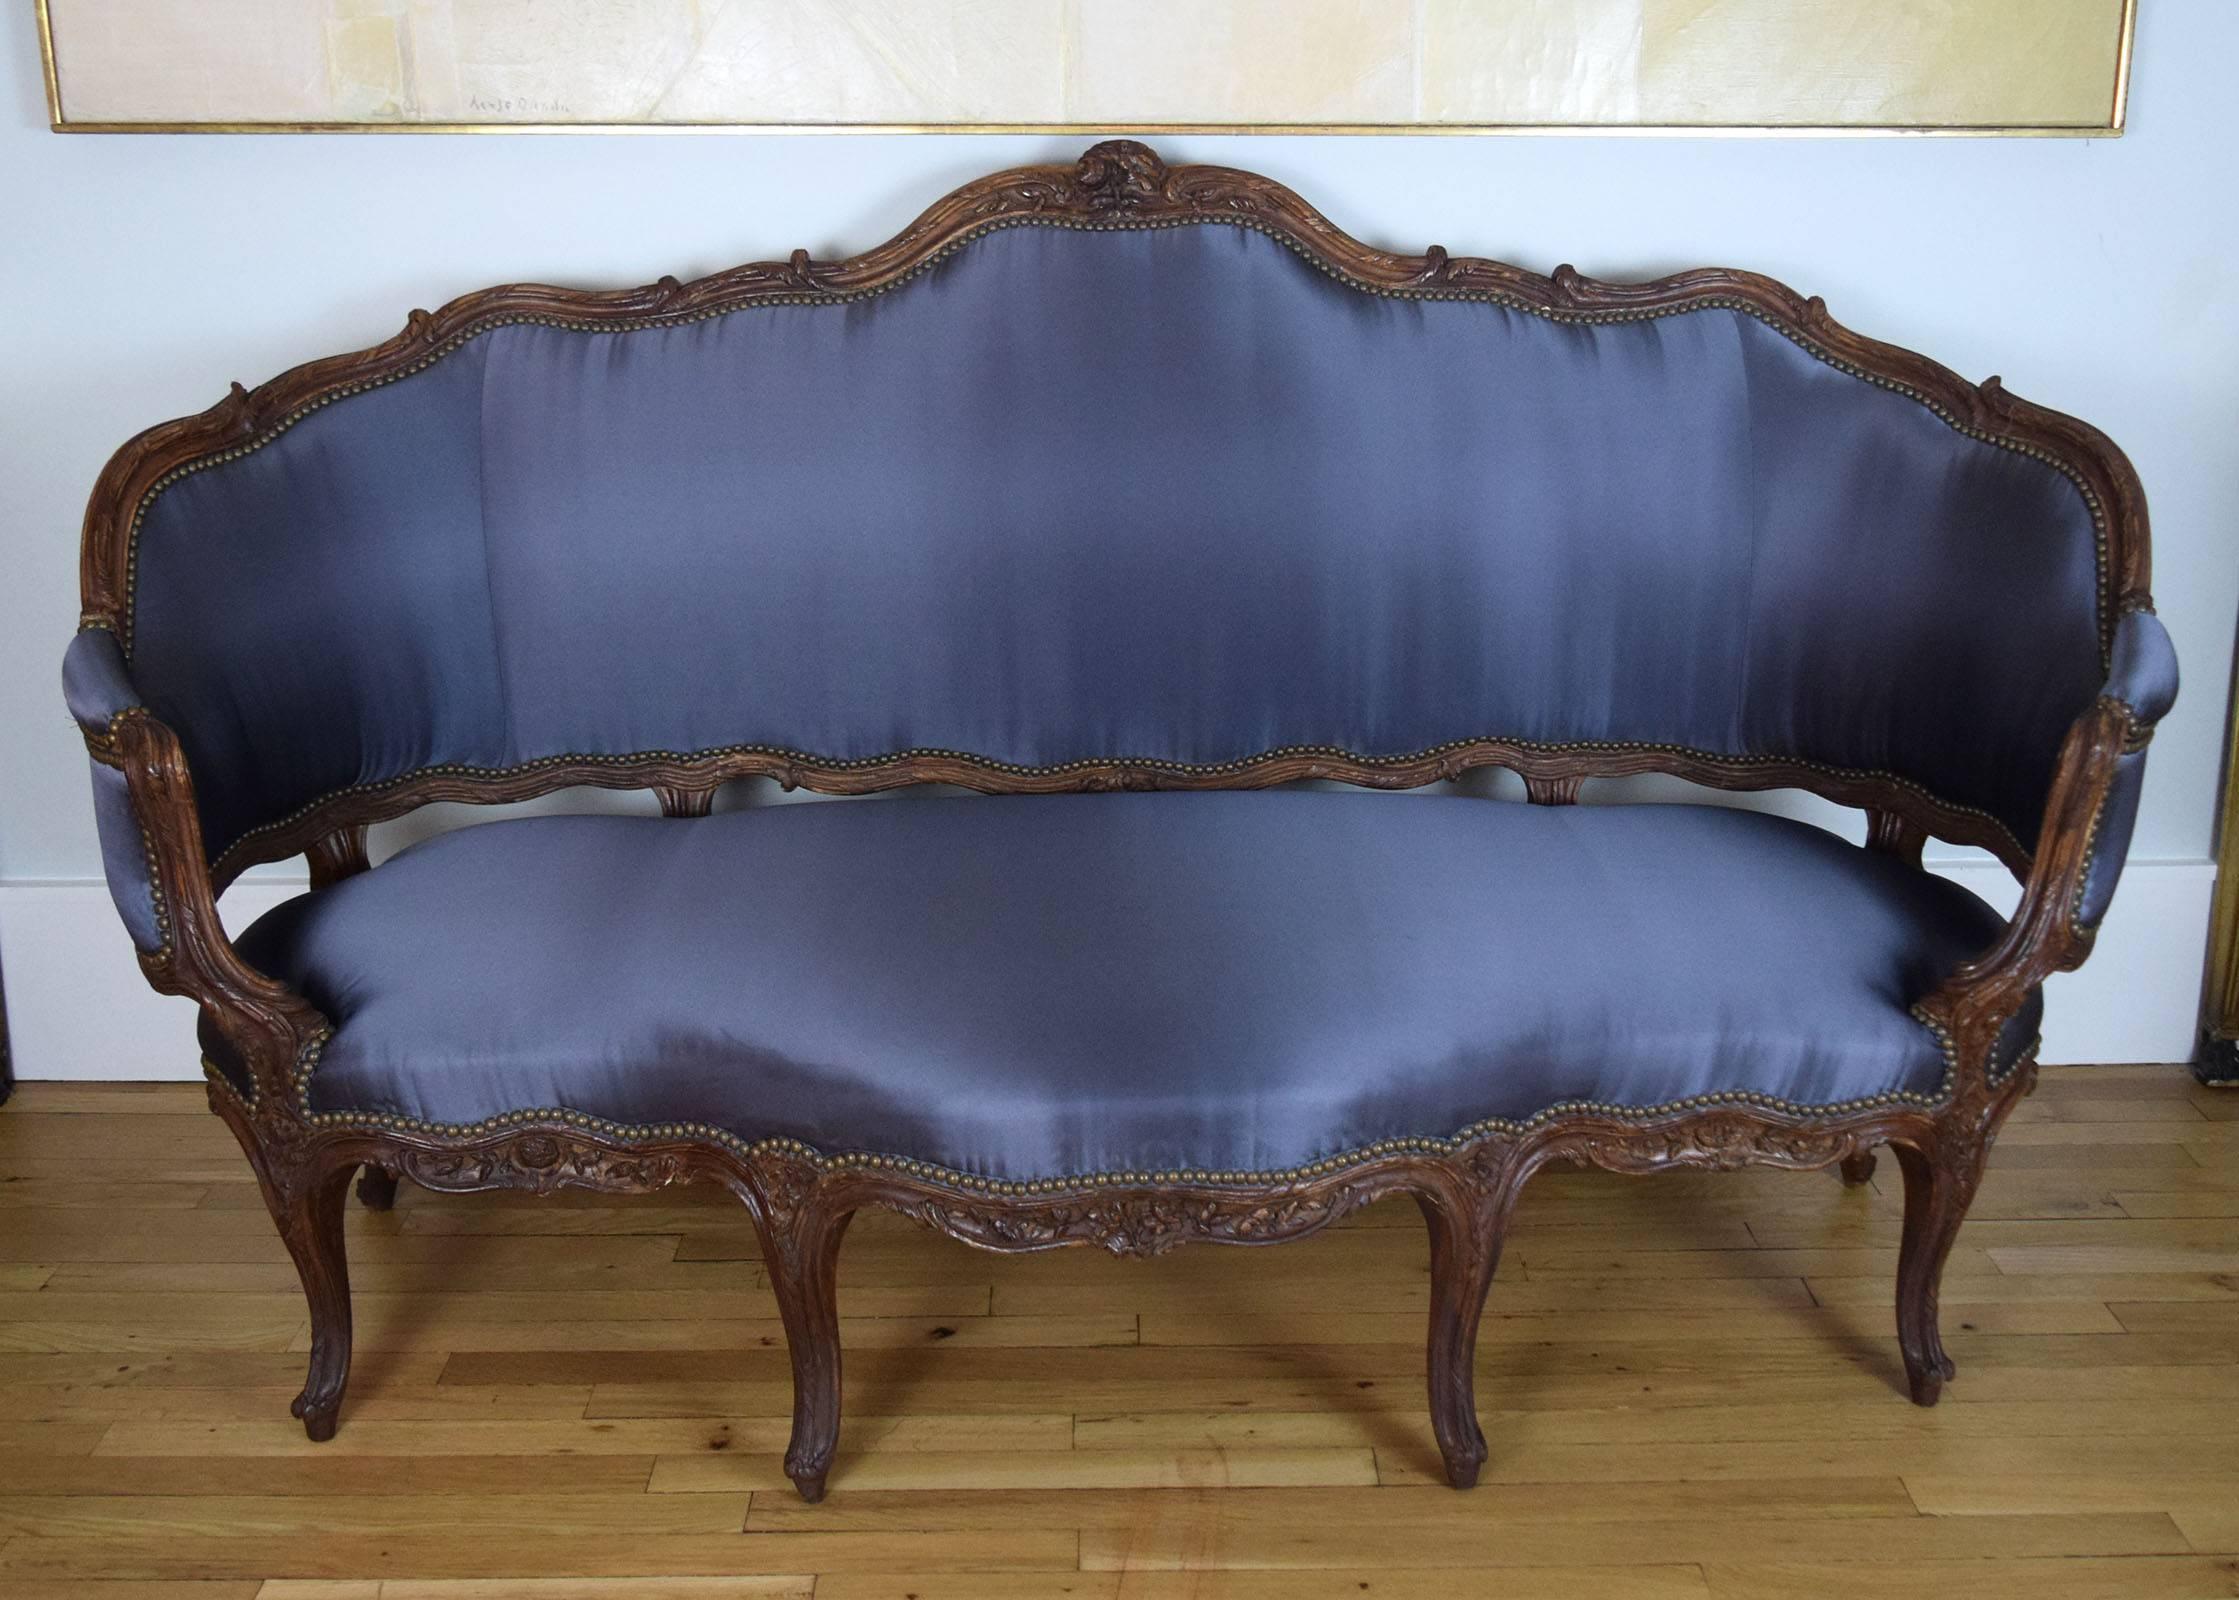 Das Nussbaumgestell dieses großen Sofas aus der Zeit Ludwigs XV. zeichnet sich durch seine sehr lebendige Form aus. Es ist fein geschnitzt mit Blumen, Blättern, gebundenem Schilf und verschlungenen pflanzlichen Formen. Wir haben ihn mit